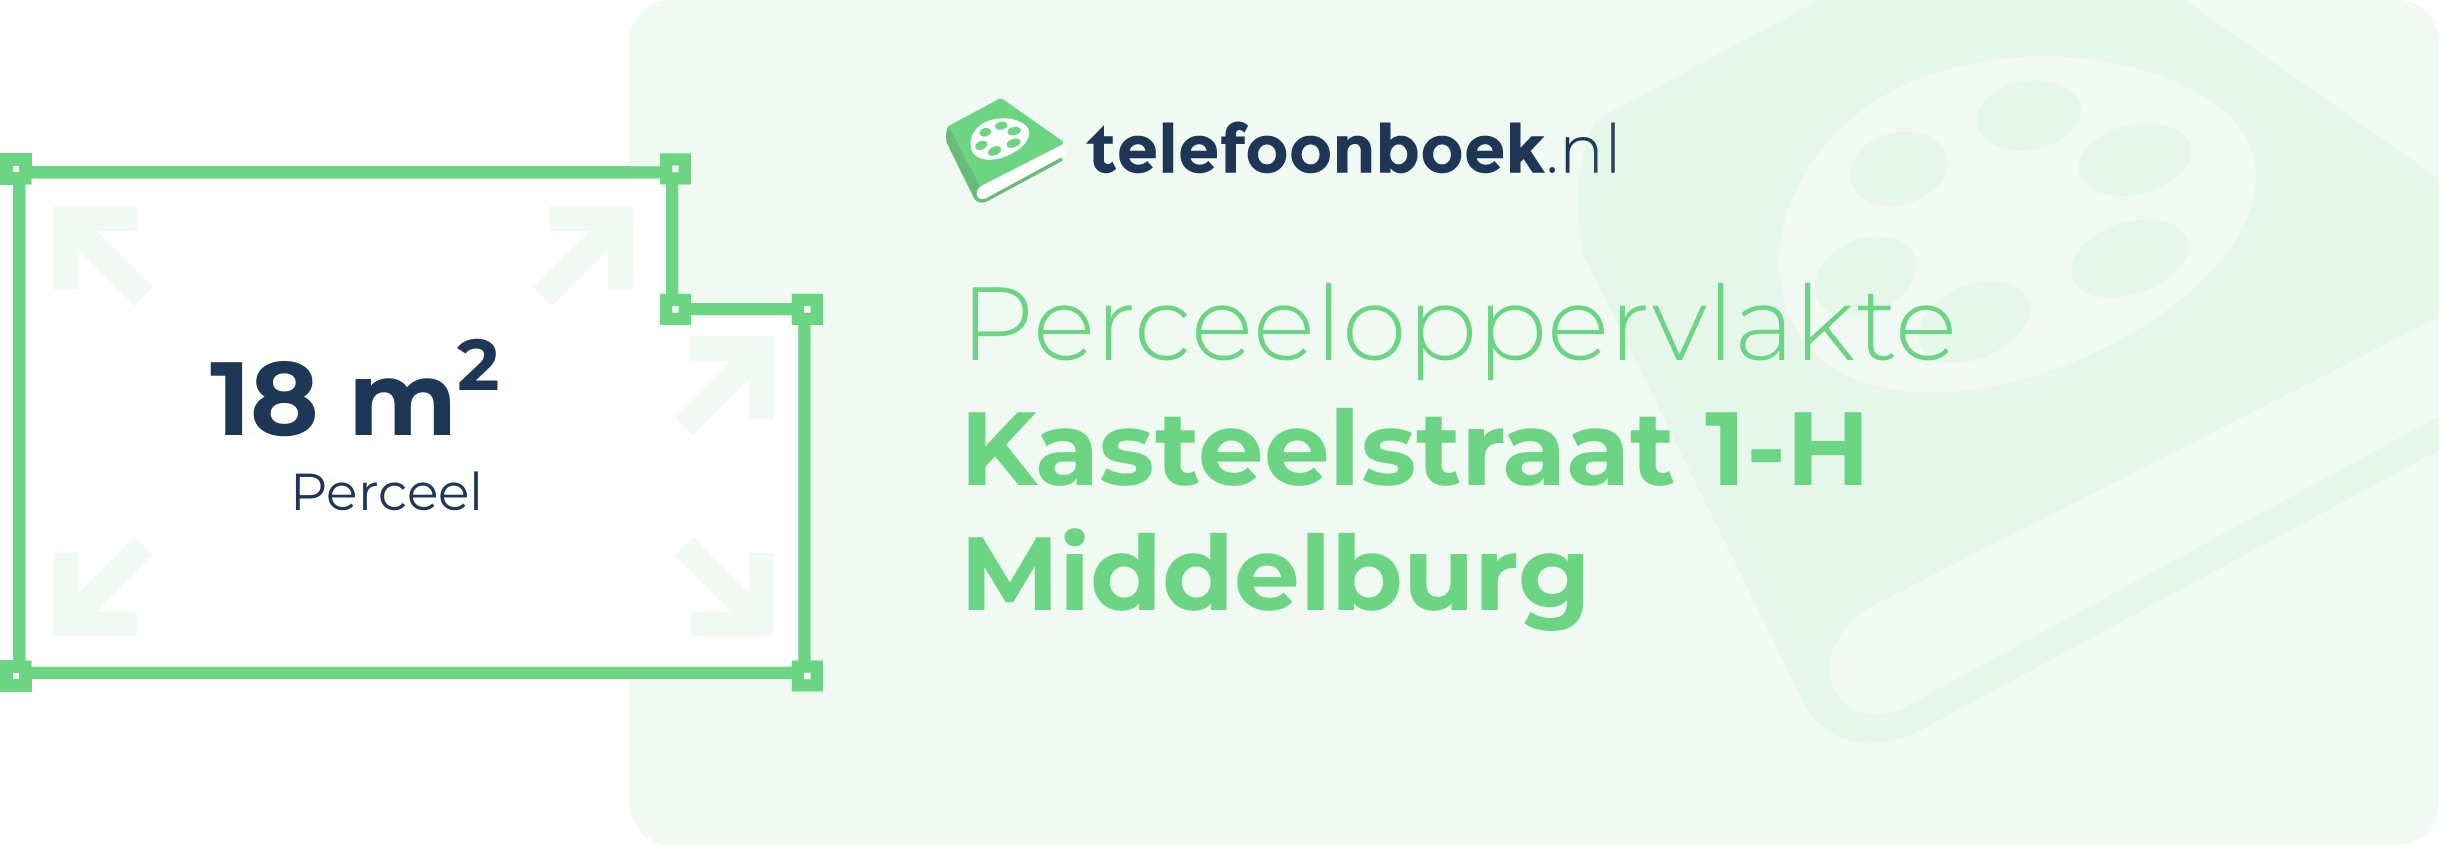 Perceeloppervlakte Kasteelstraat 1-H Middelburg